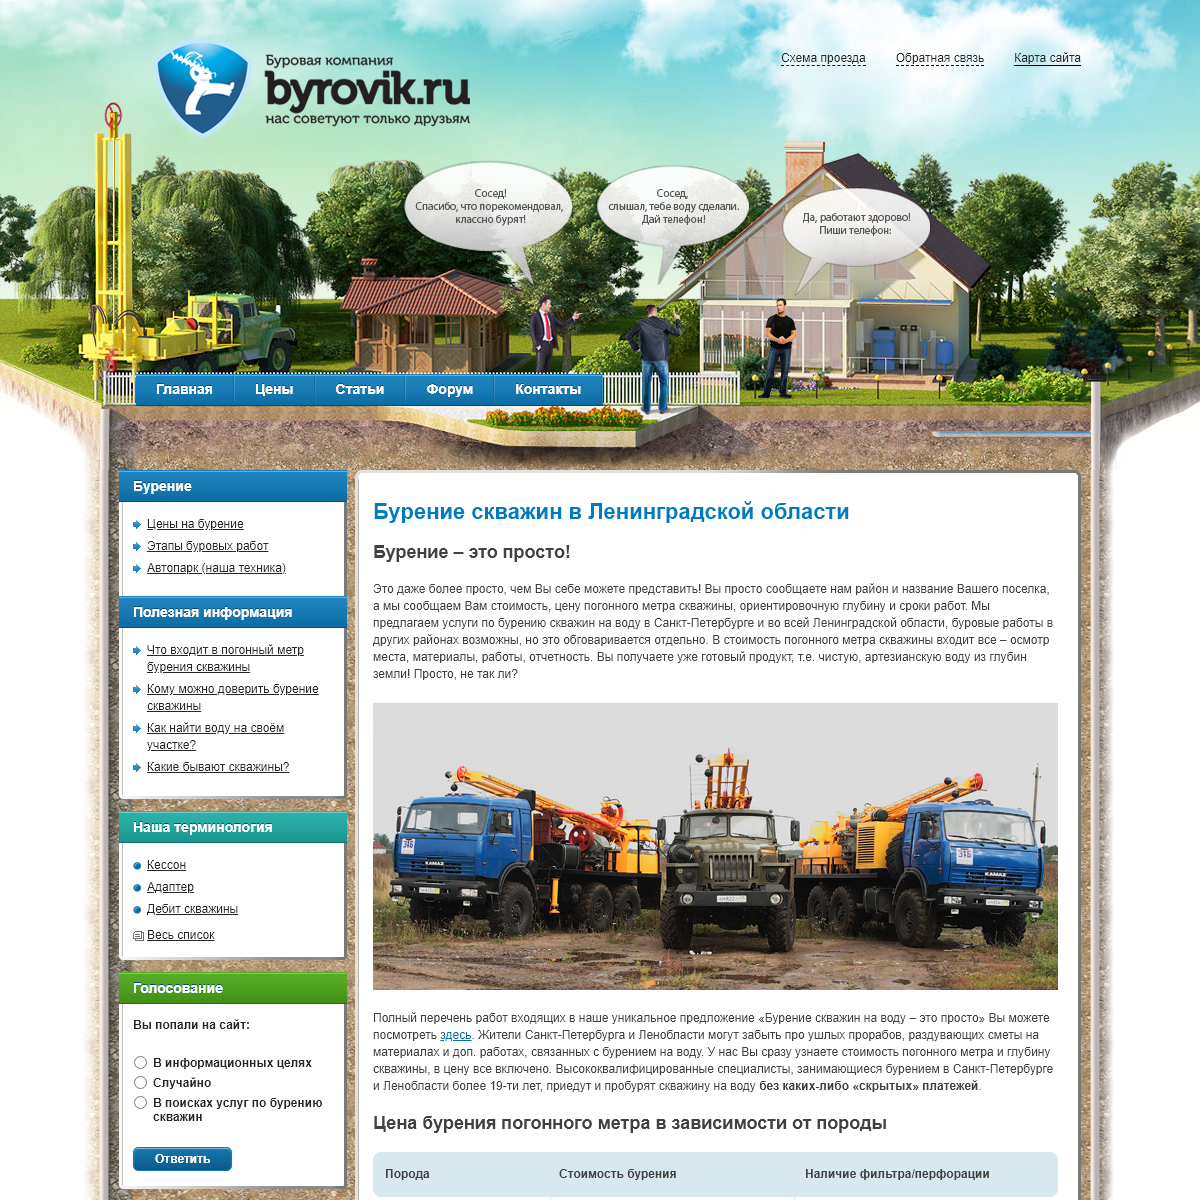 A complete backup of byrovik.ru